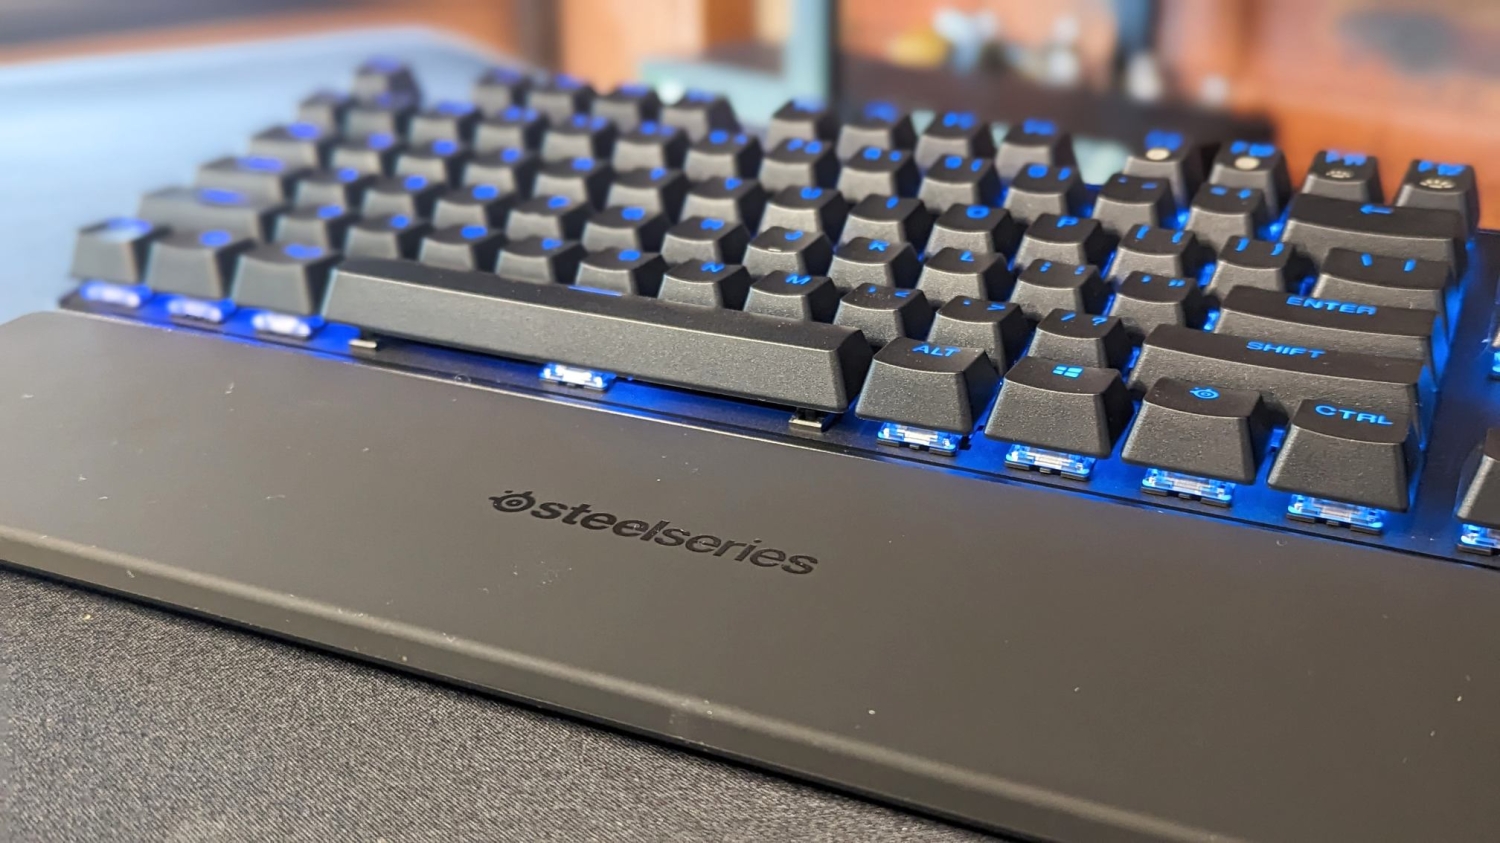 SteelSeries Apex Pro TKL Wireless Keyboard review